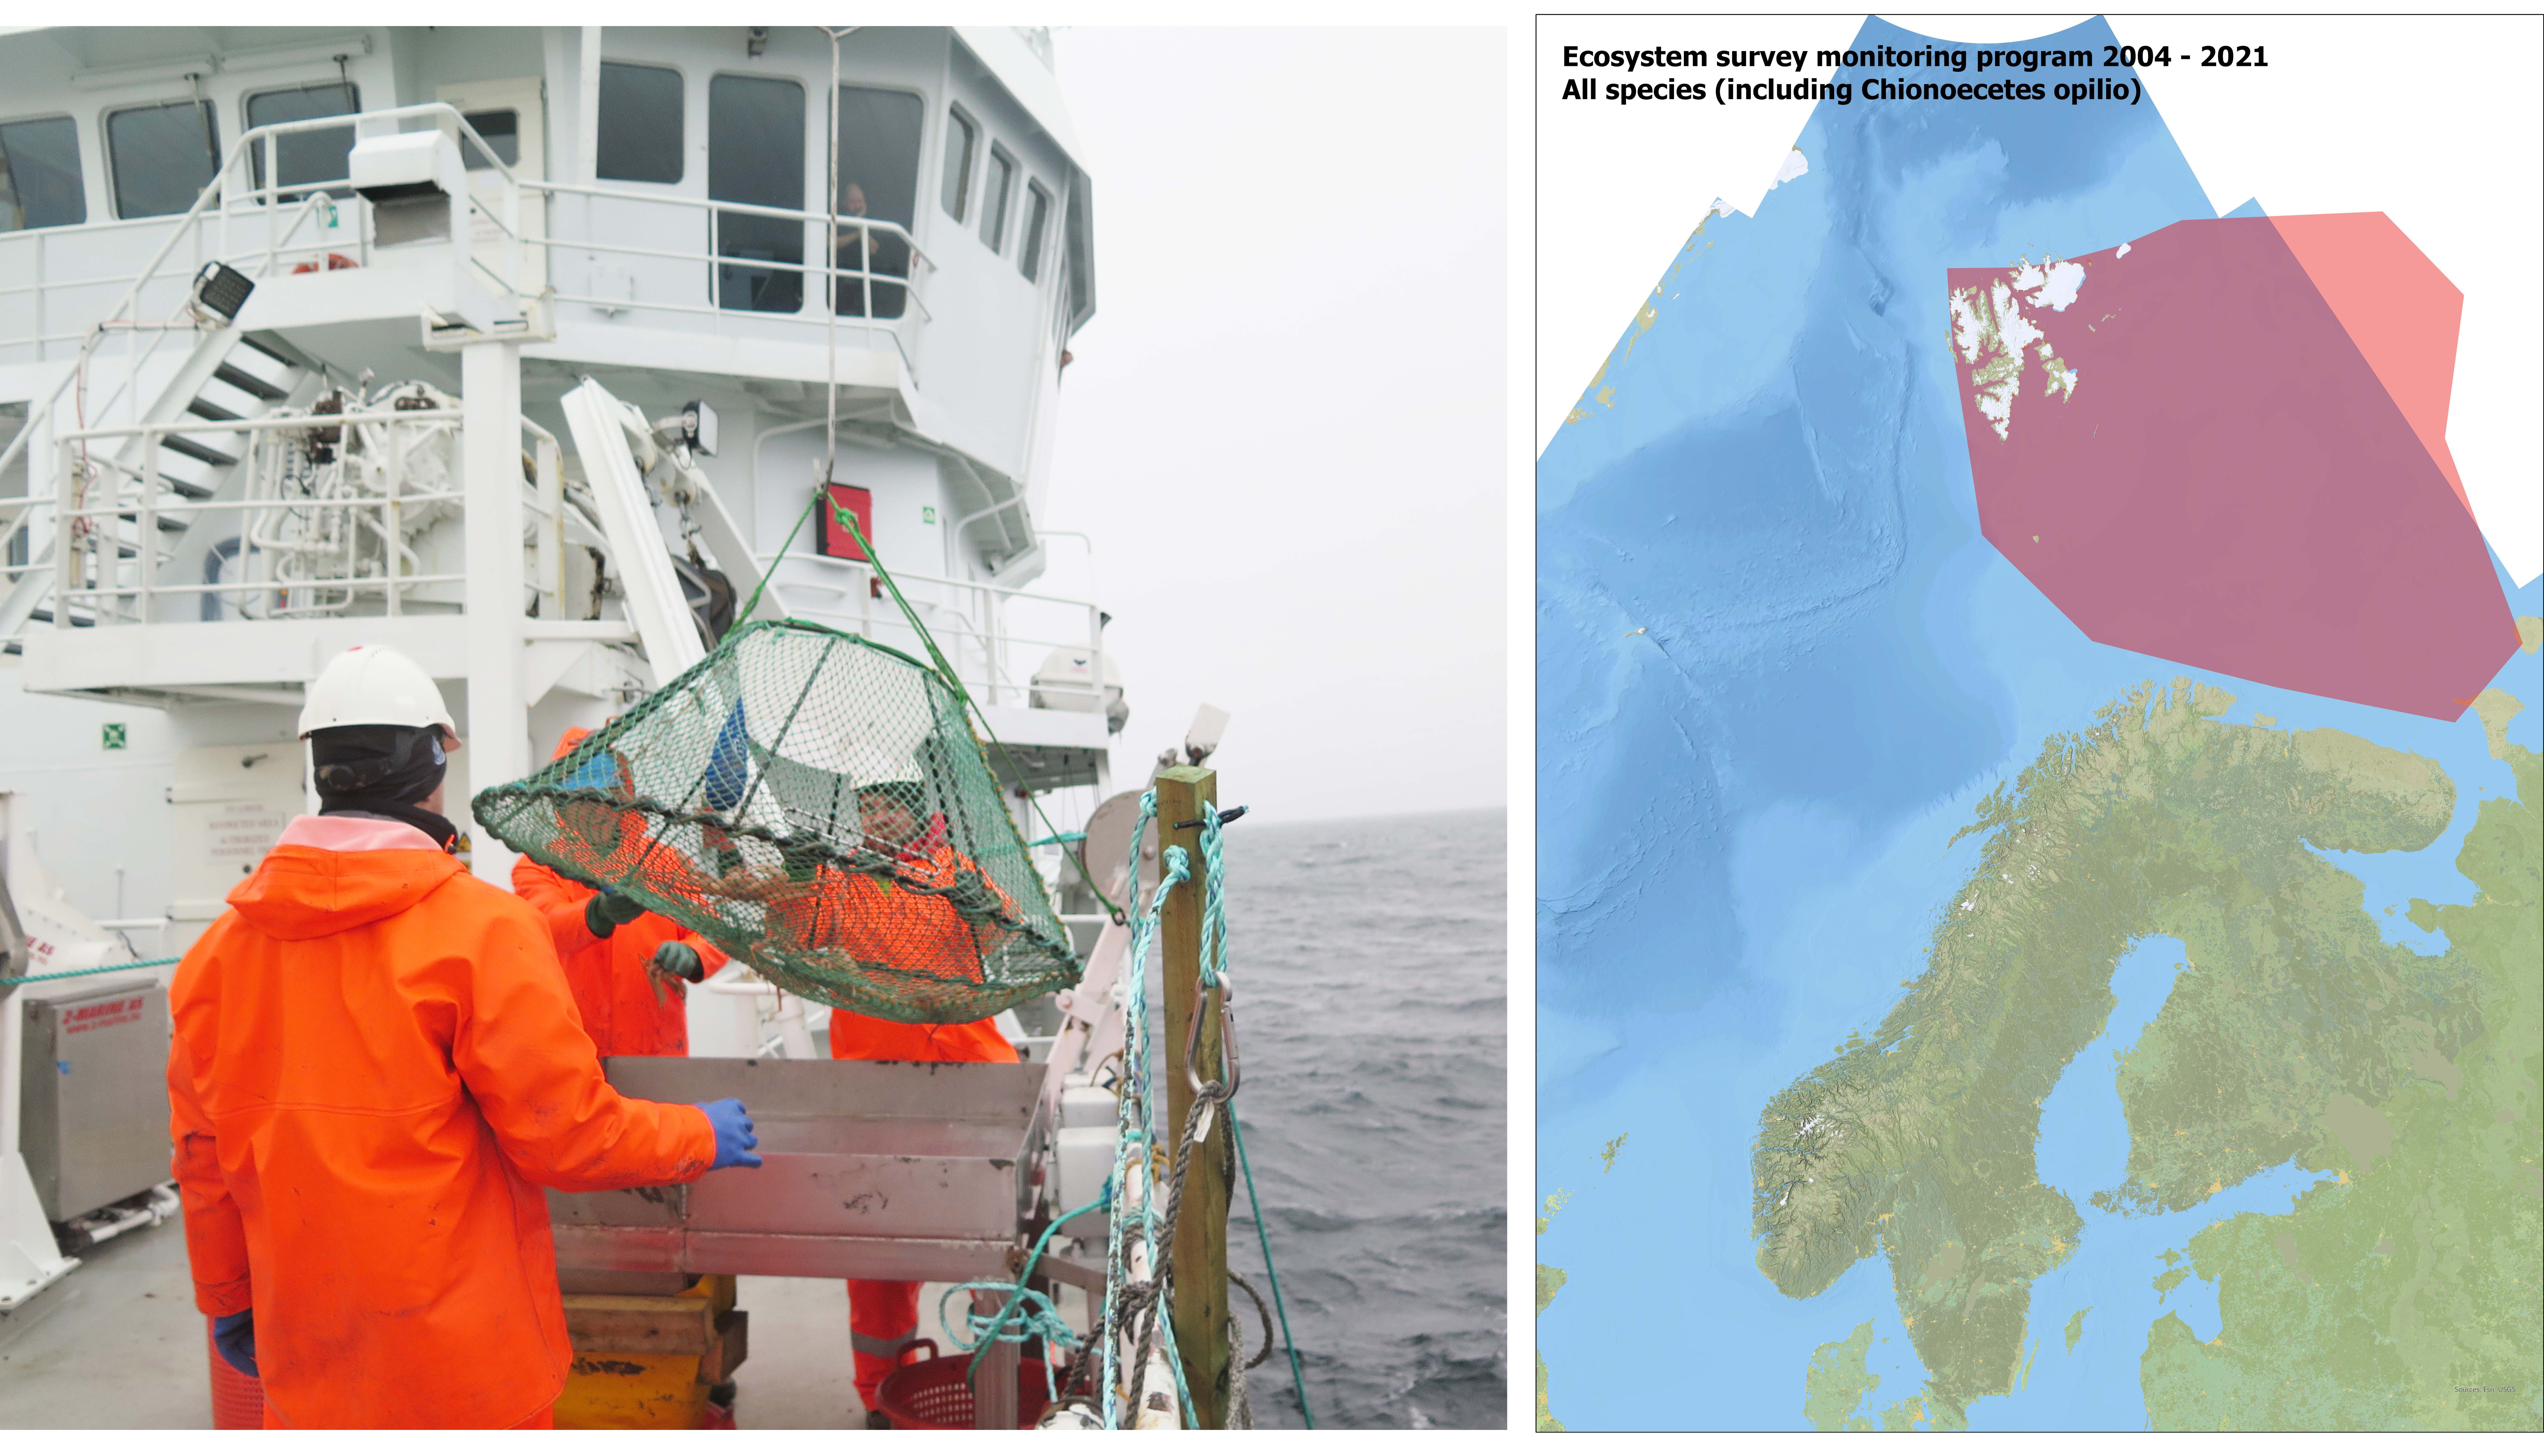 Bildet til venstre viser snøkrabbefiske, kartet til høyre viser området hvor arten overvåkes